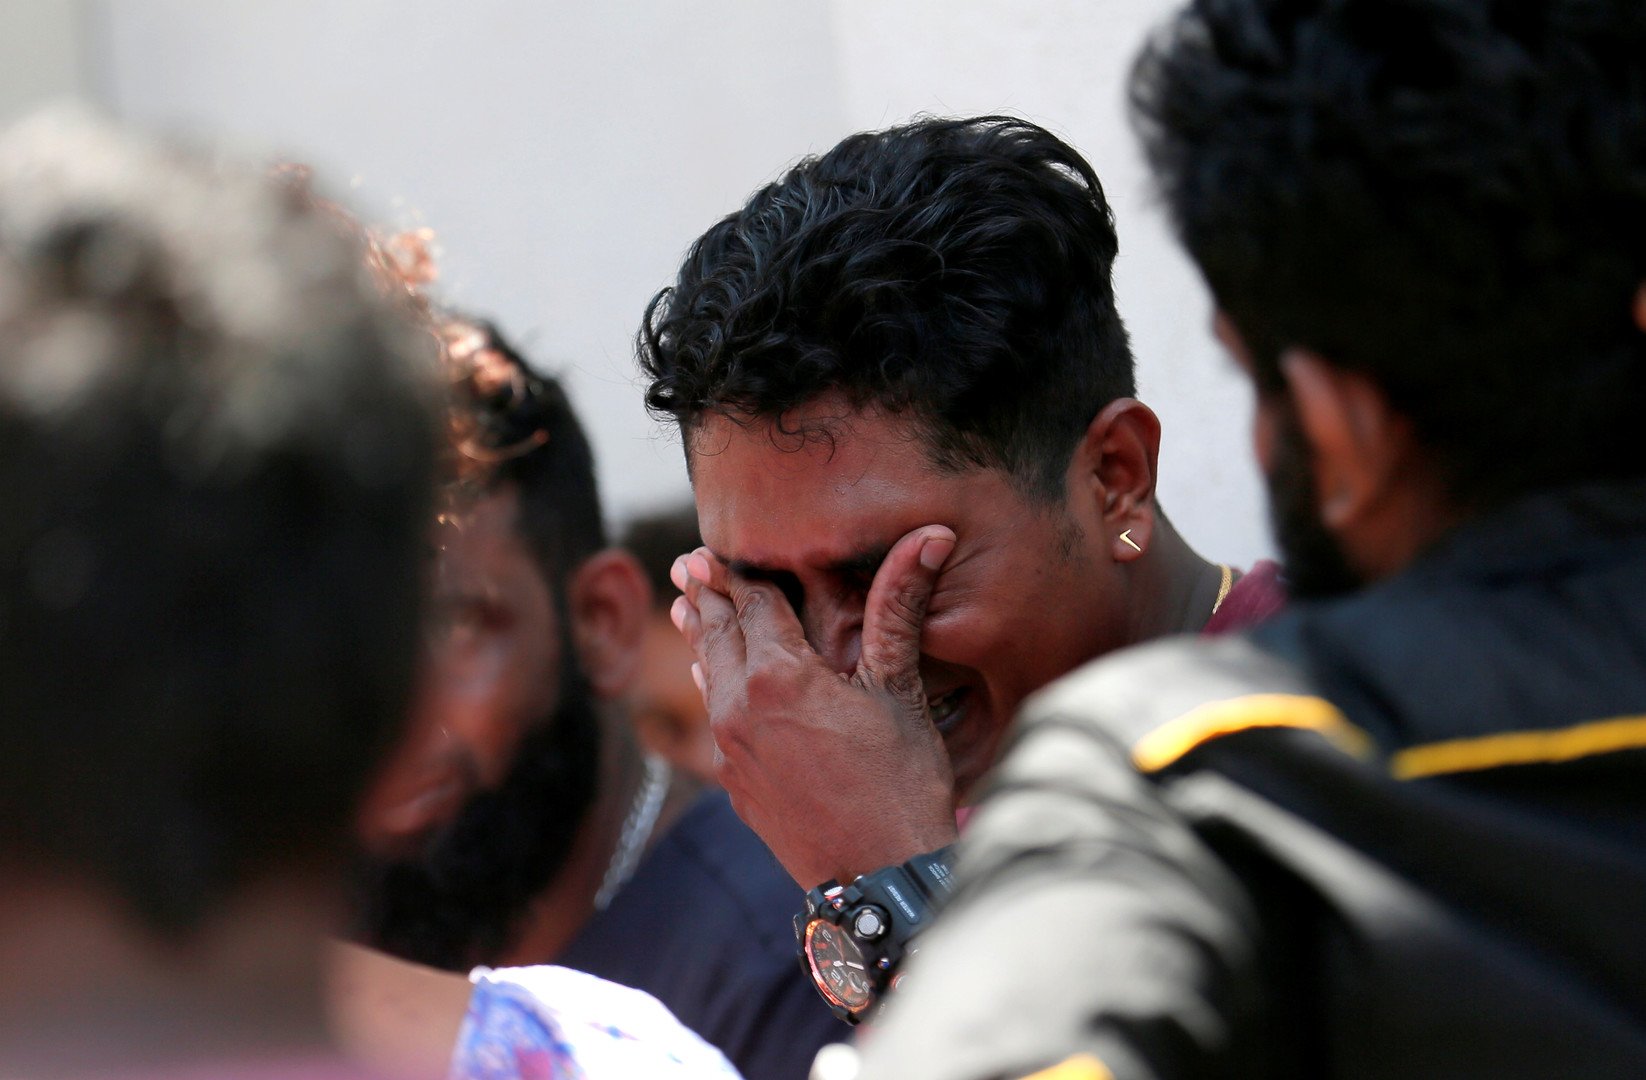 ارتفاع عدد قتلى تفجيرات سريلانكا إلى 290 شخصا وإصابة نحو 500 آخرين